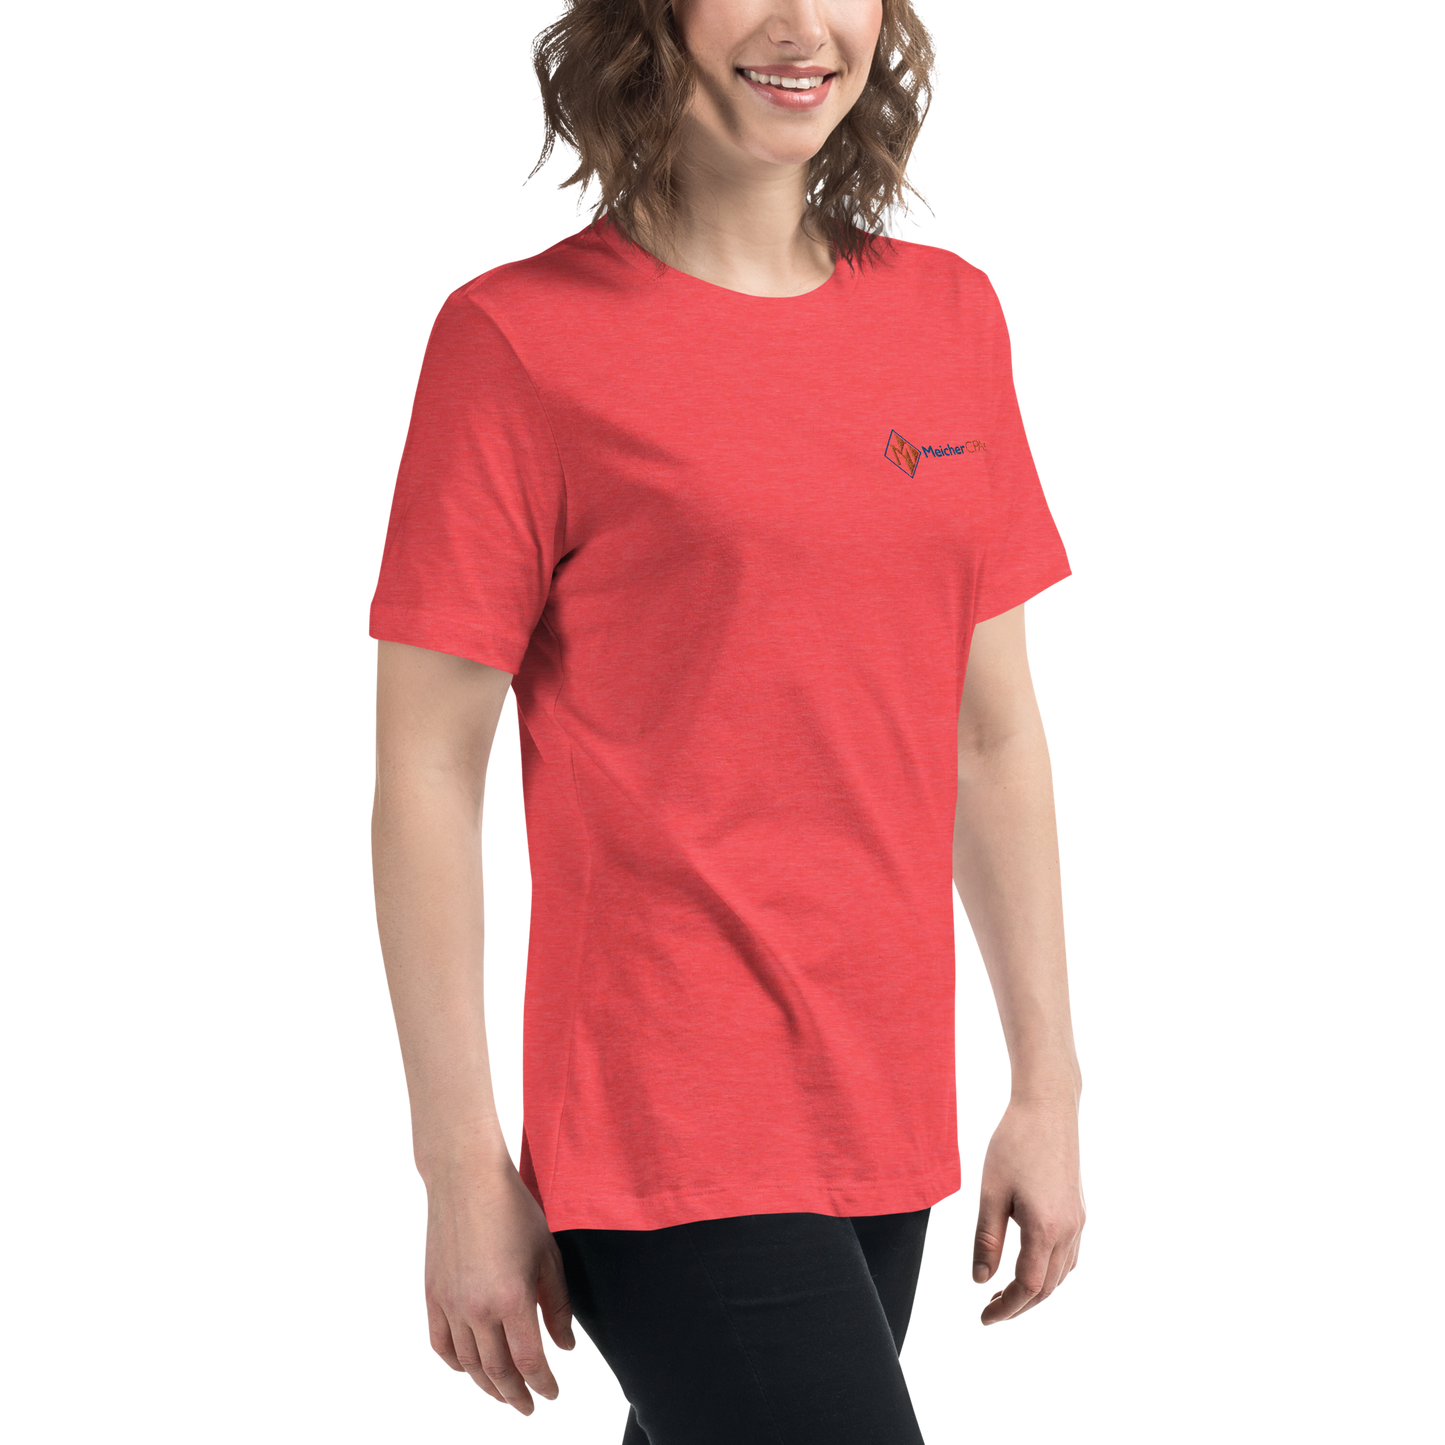 Meicher - Women's Relaxed T-Shirt